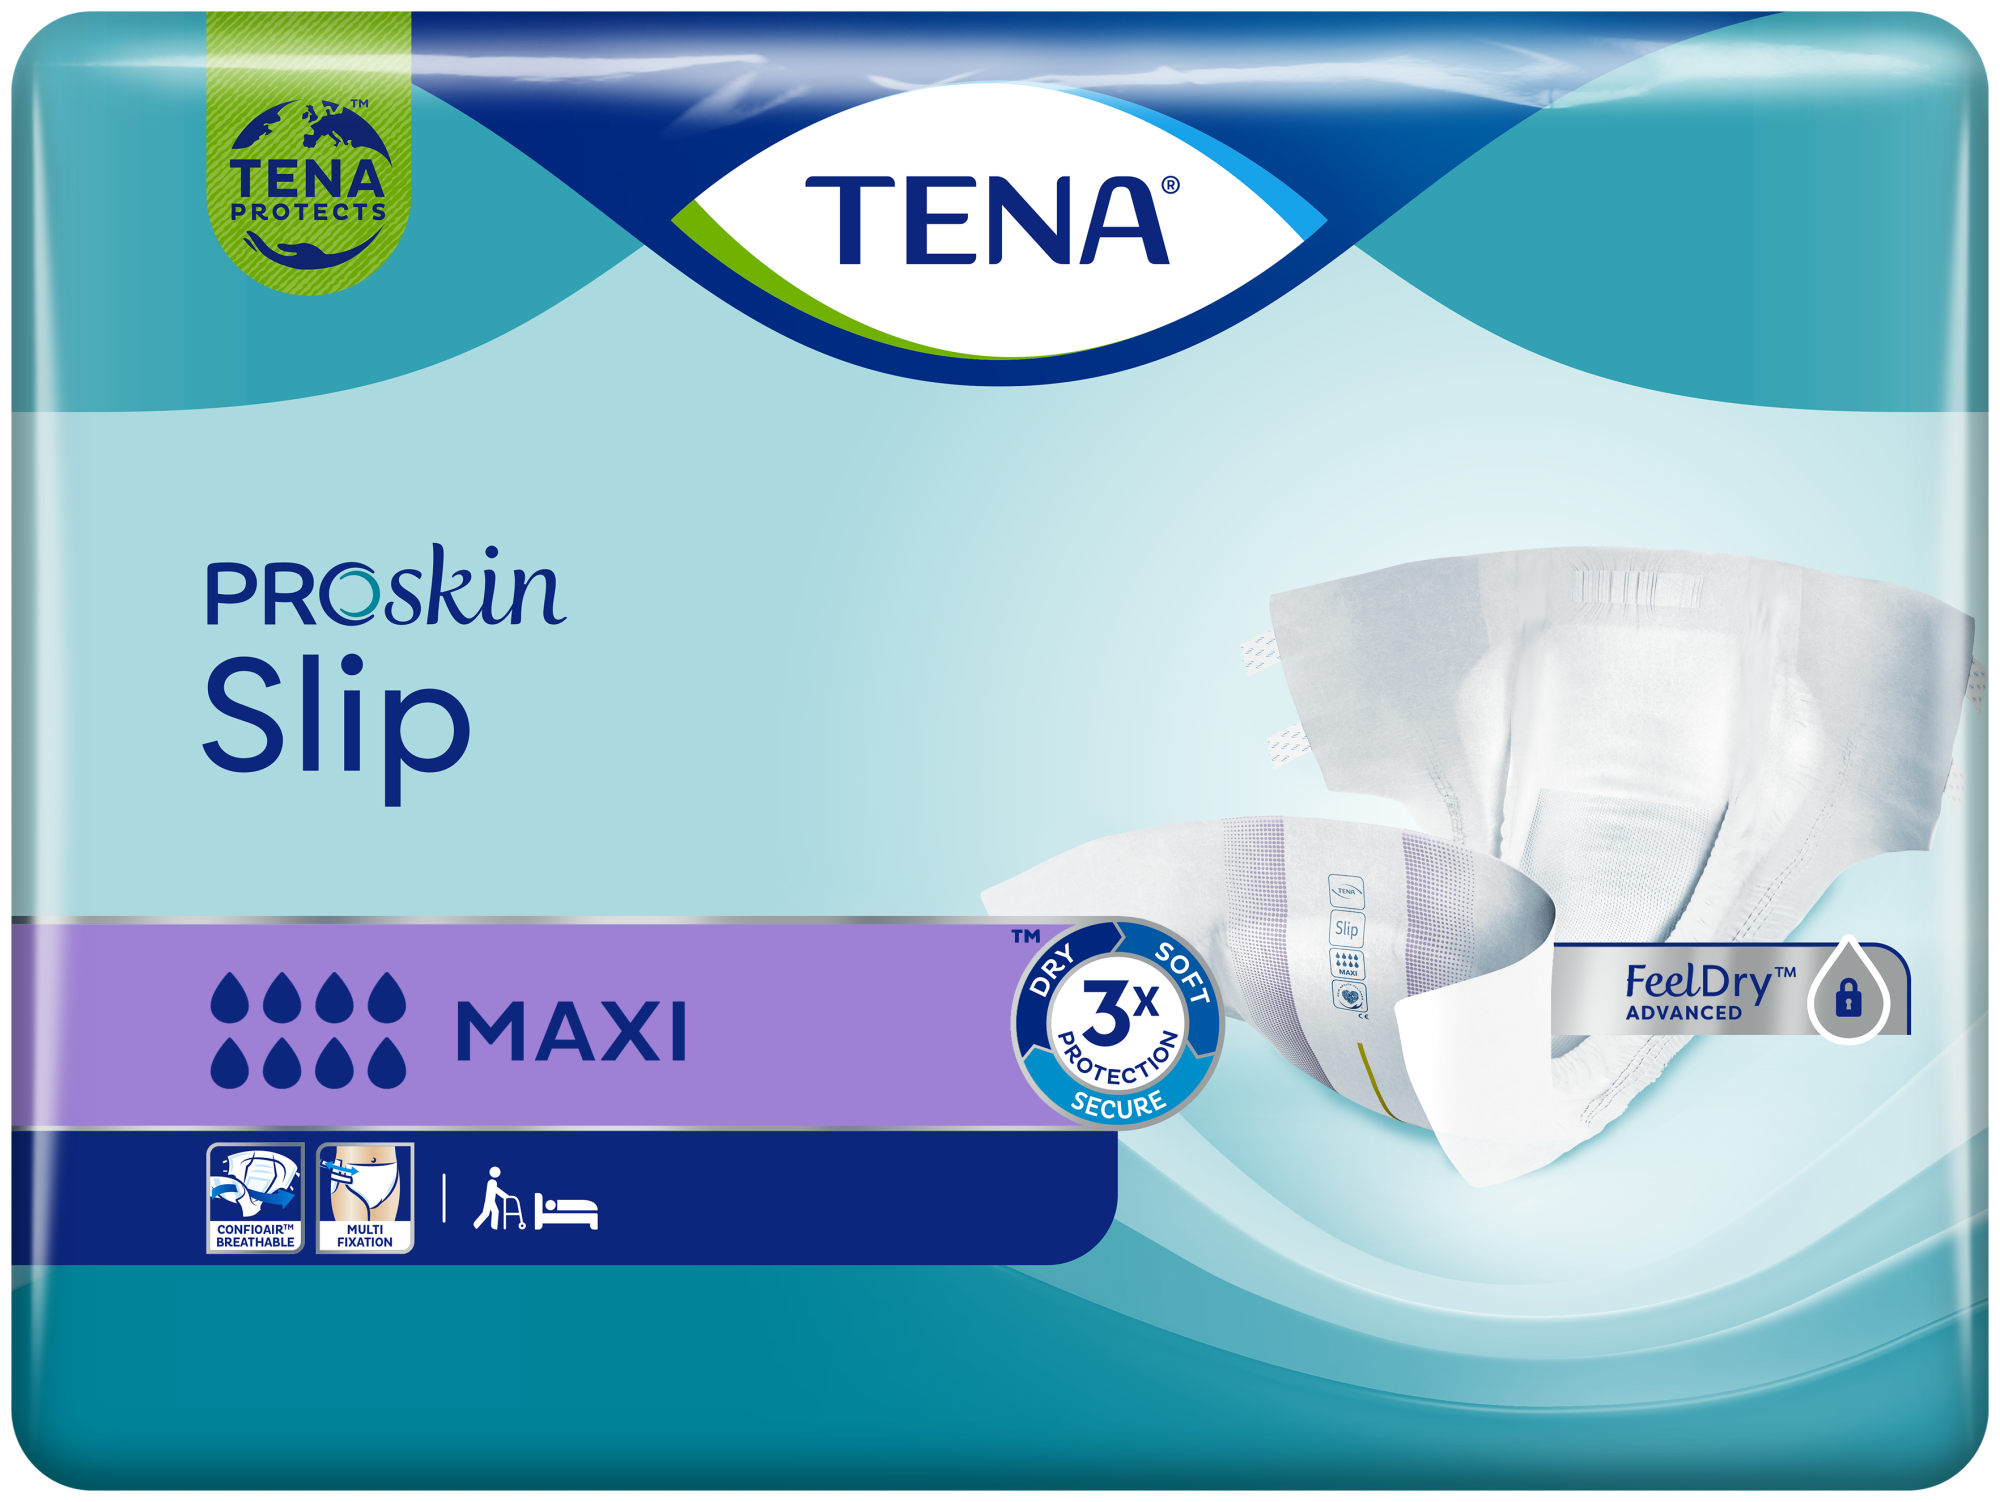 TENA Slip Maxi